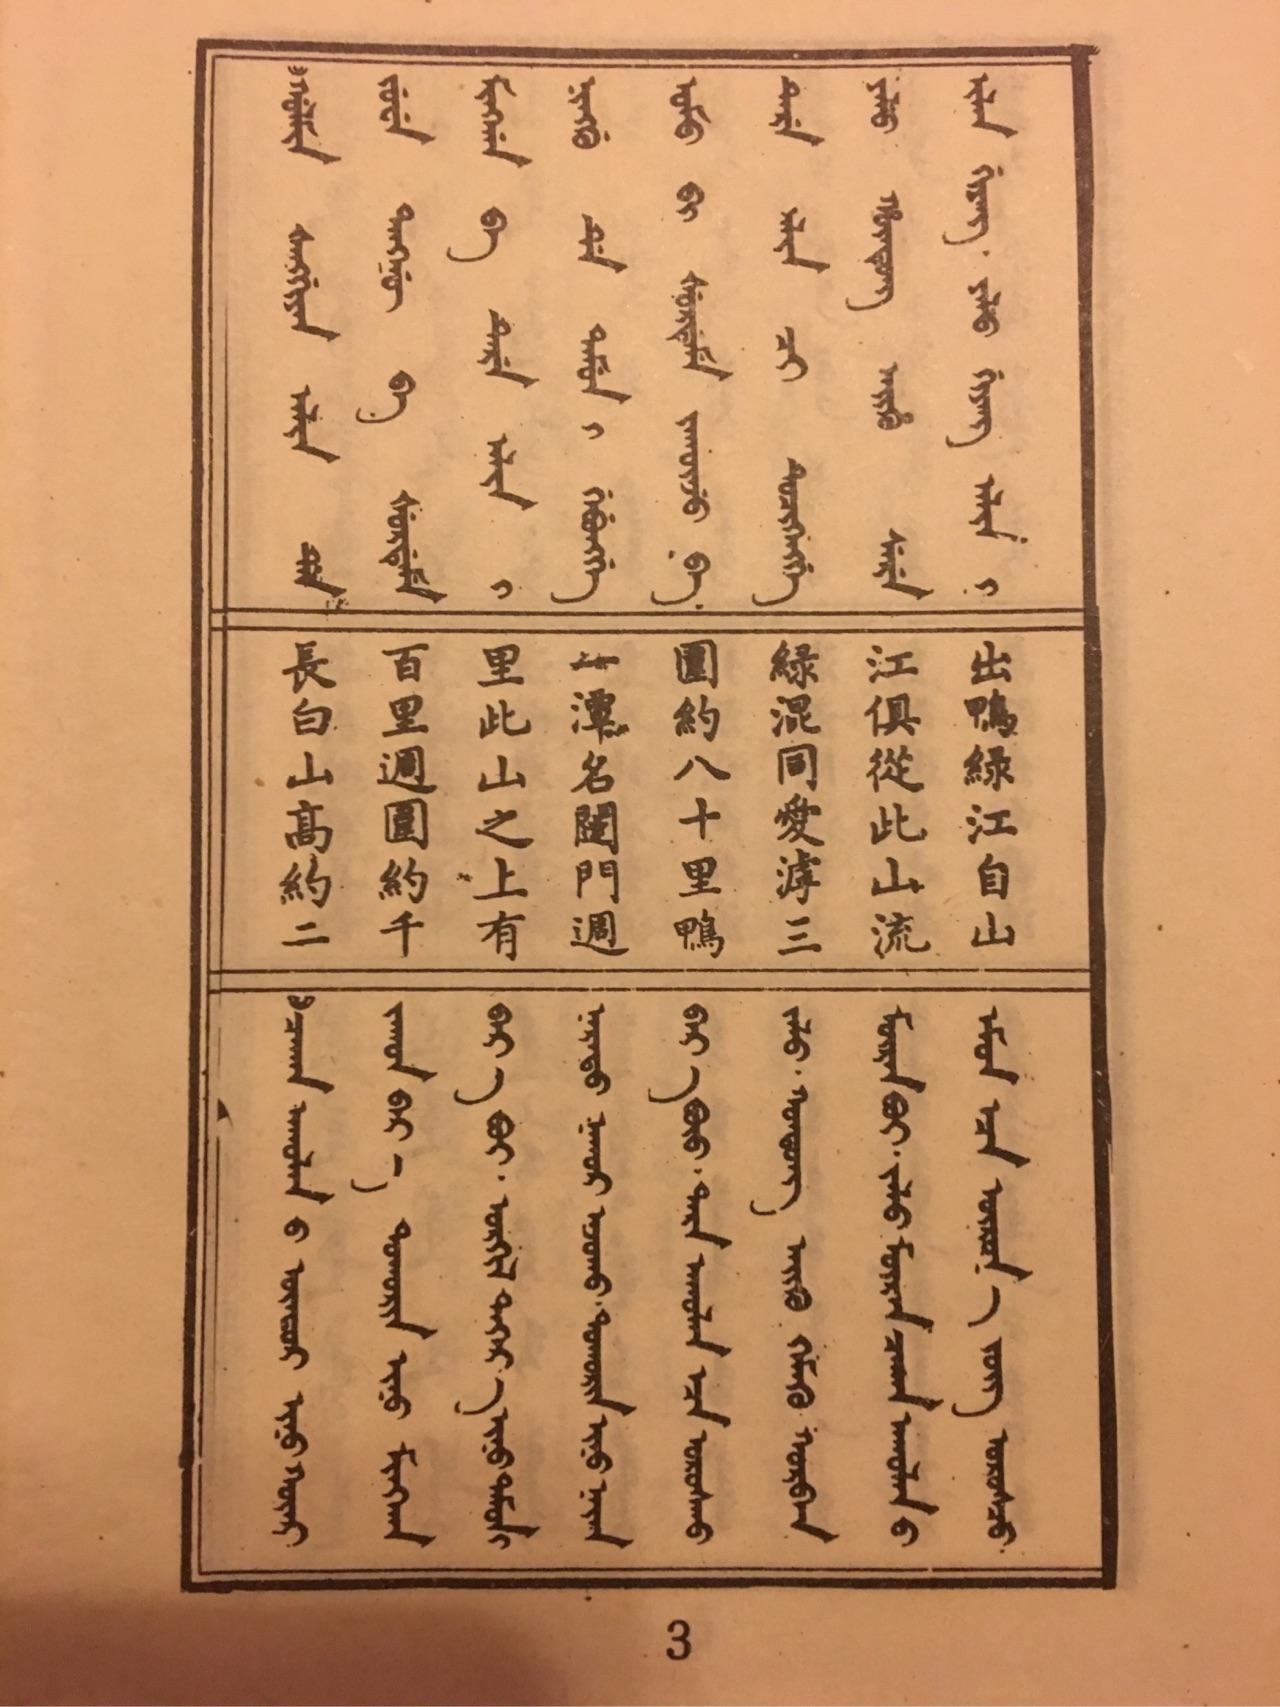 满文中清朝皇帝们的名字怎么写?